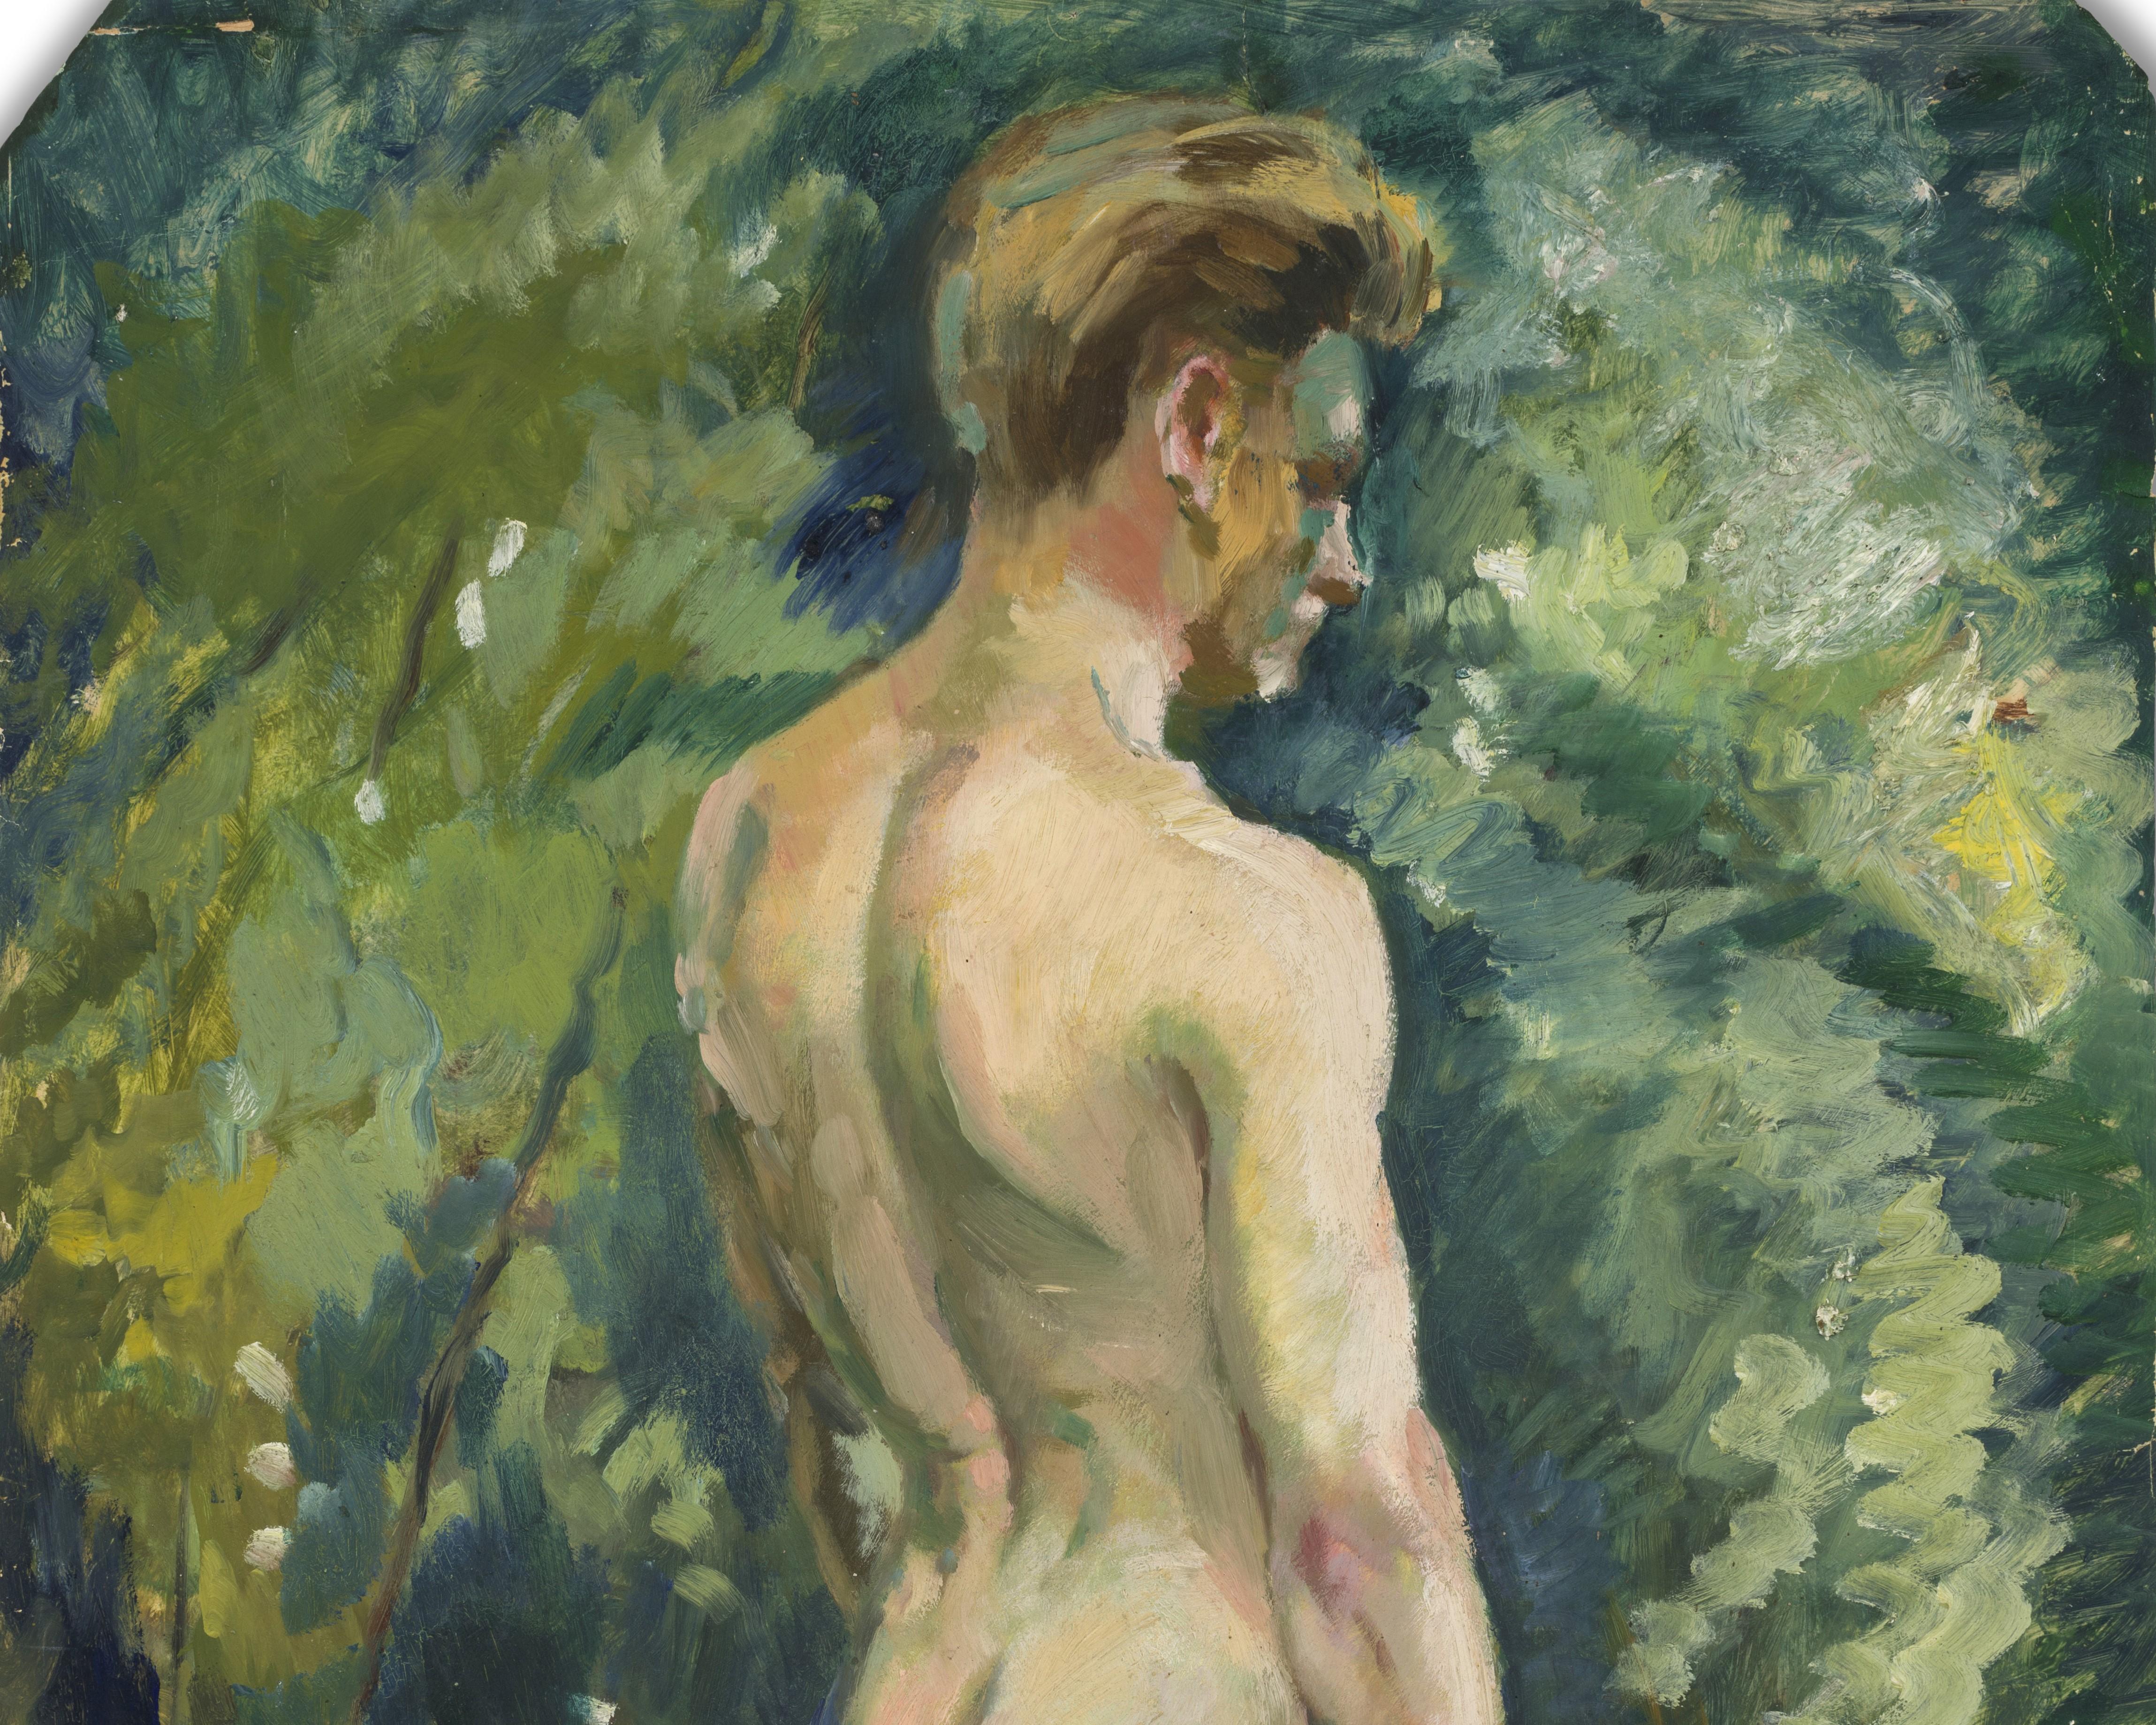 nude boy in a landscape